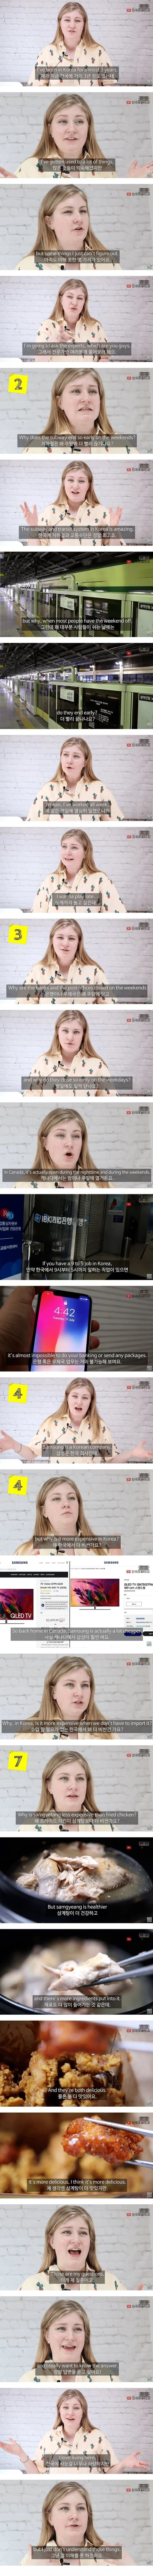 한국 사는 외국인이 이해하기 힘든 것